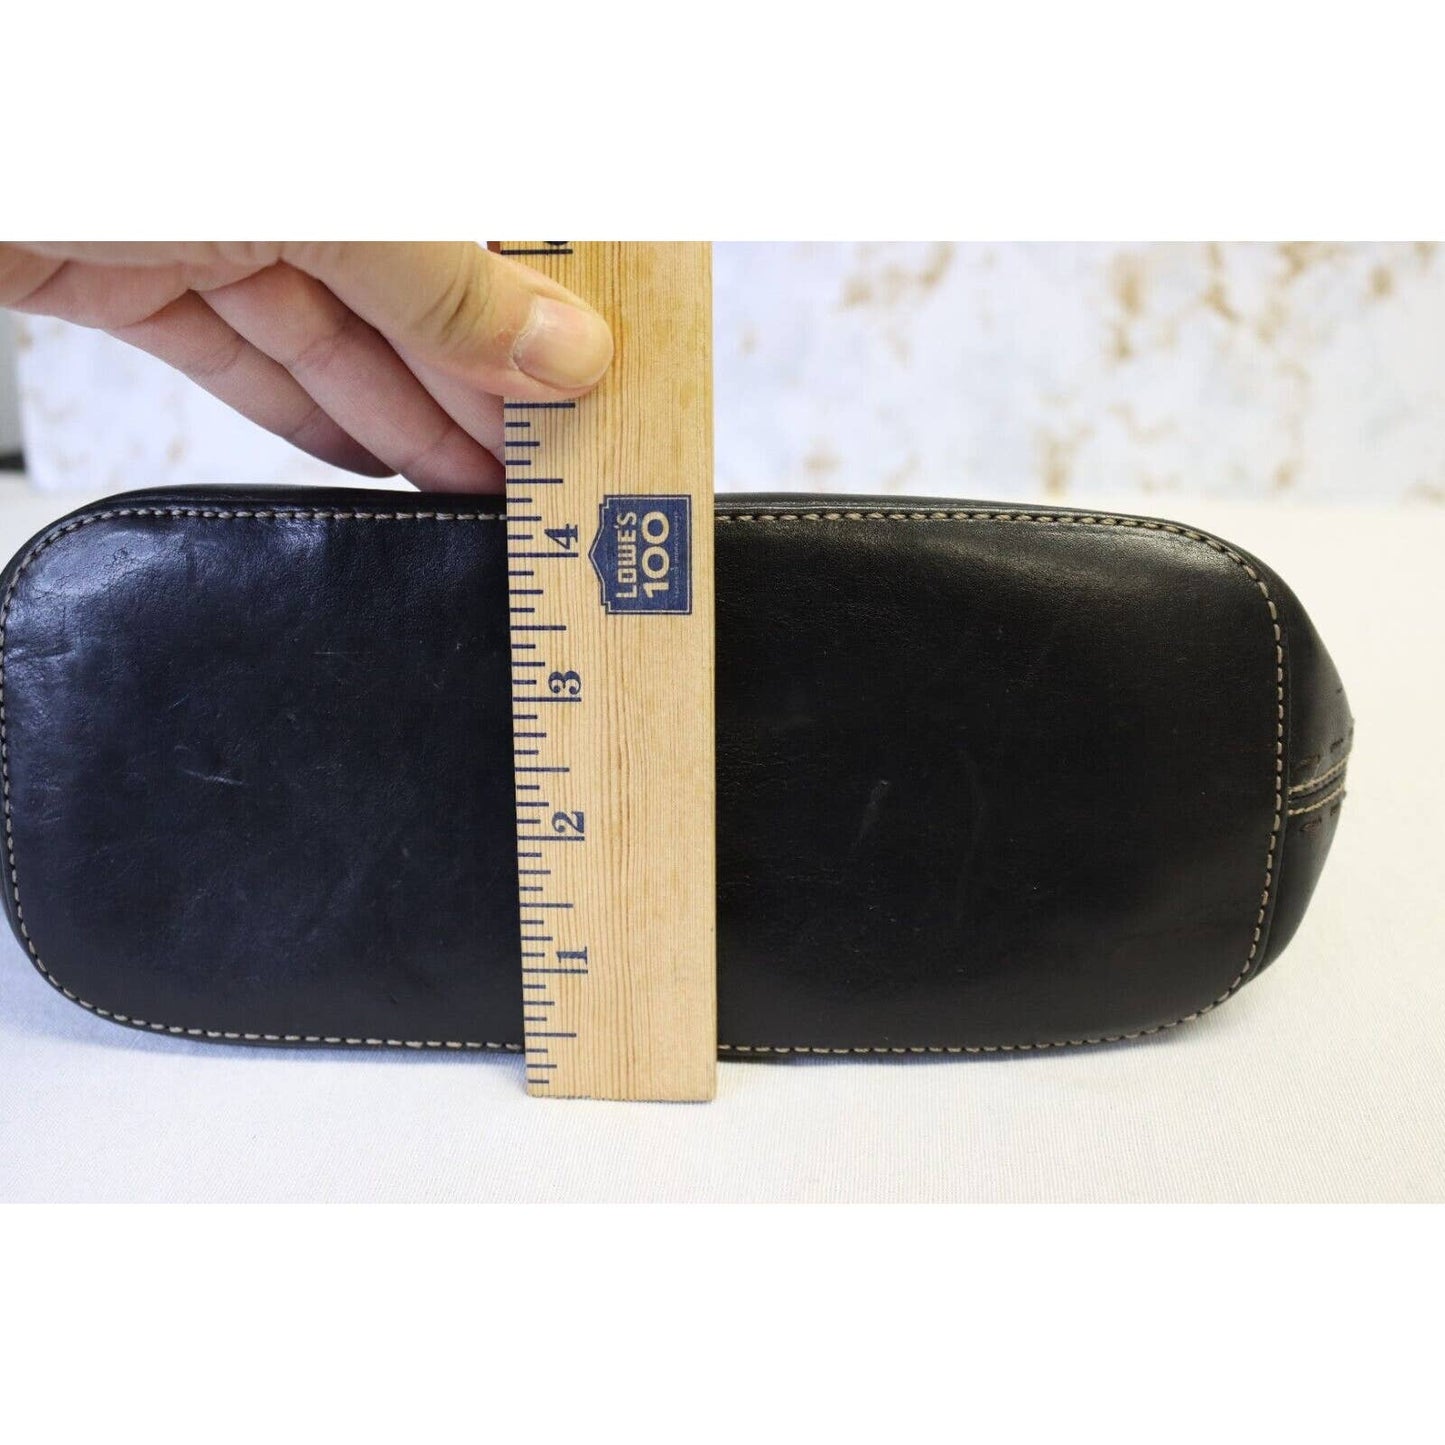 Vintage Fossil Black Leather Handbag